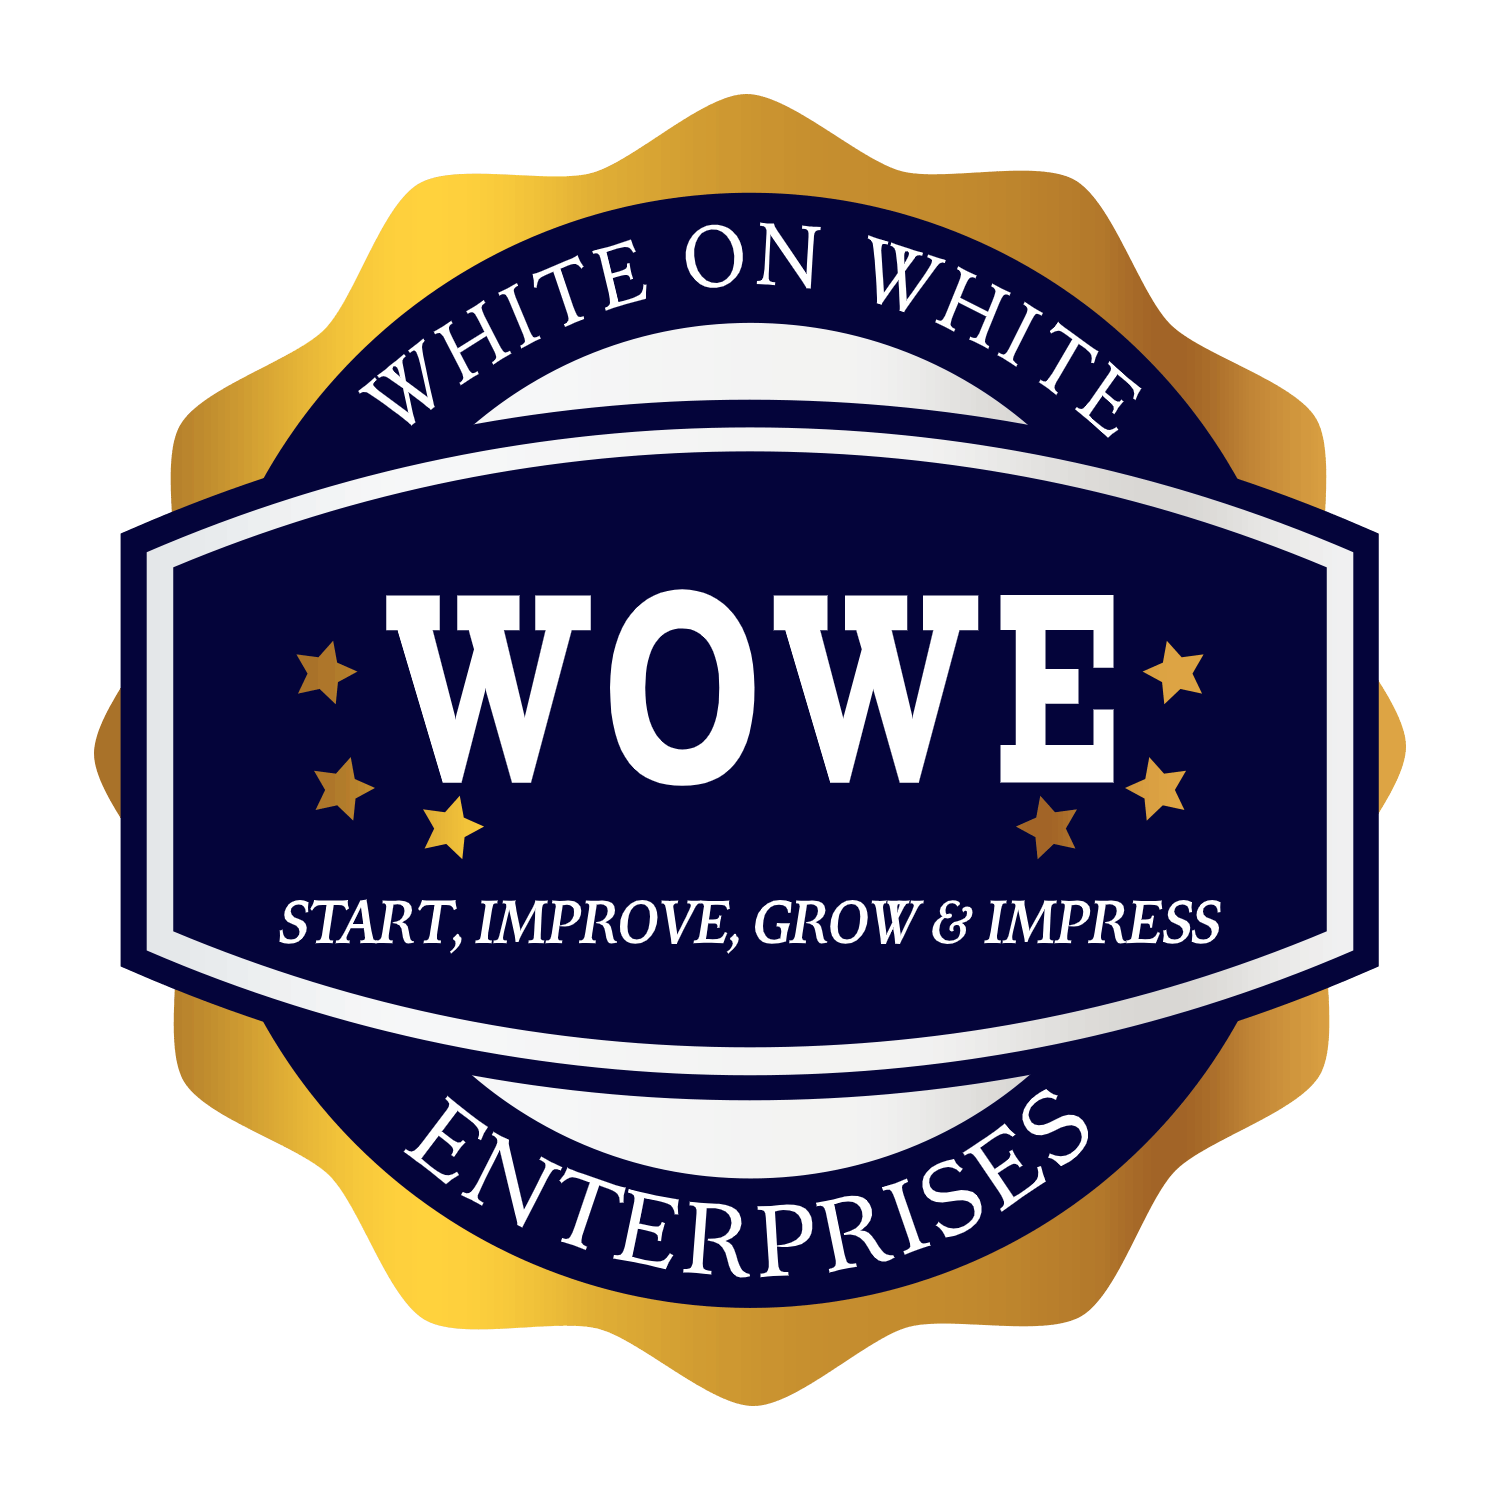 White On White Enterprises